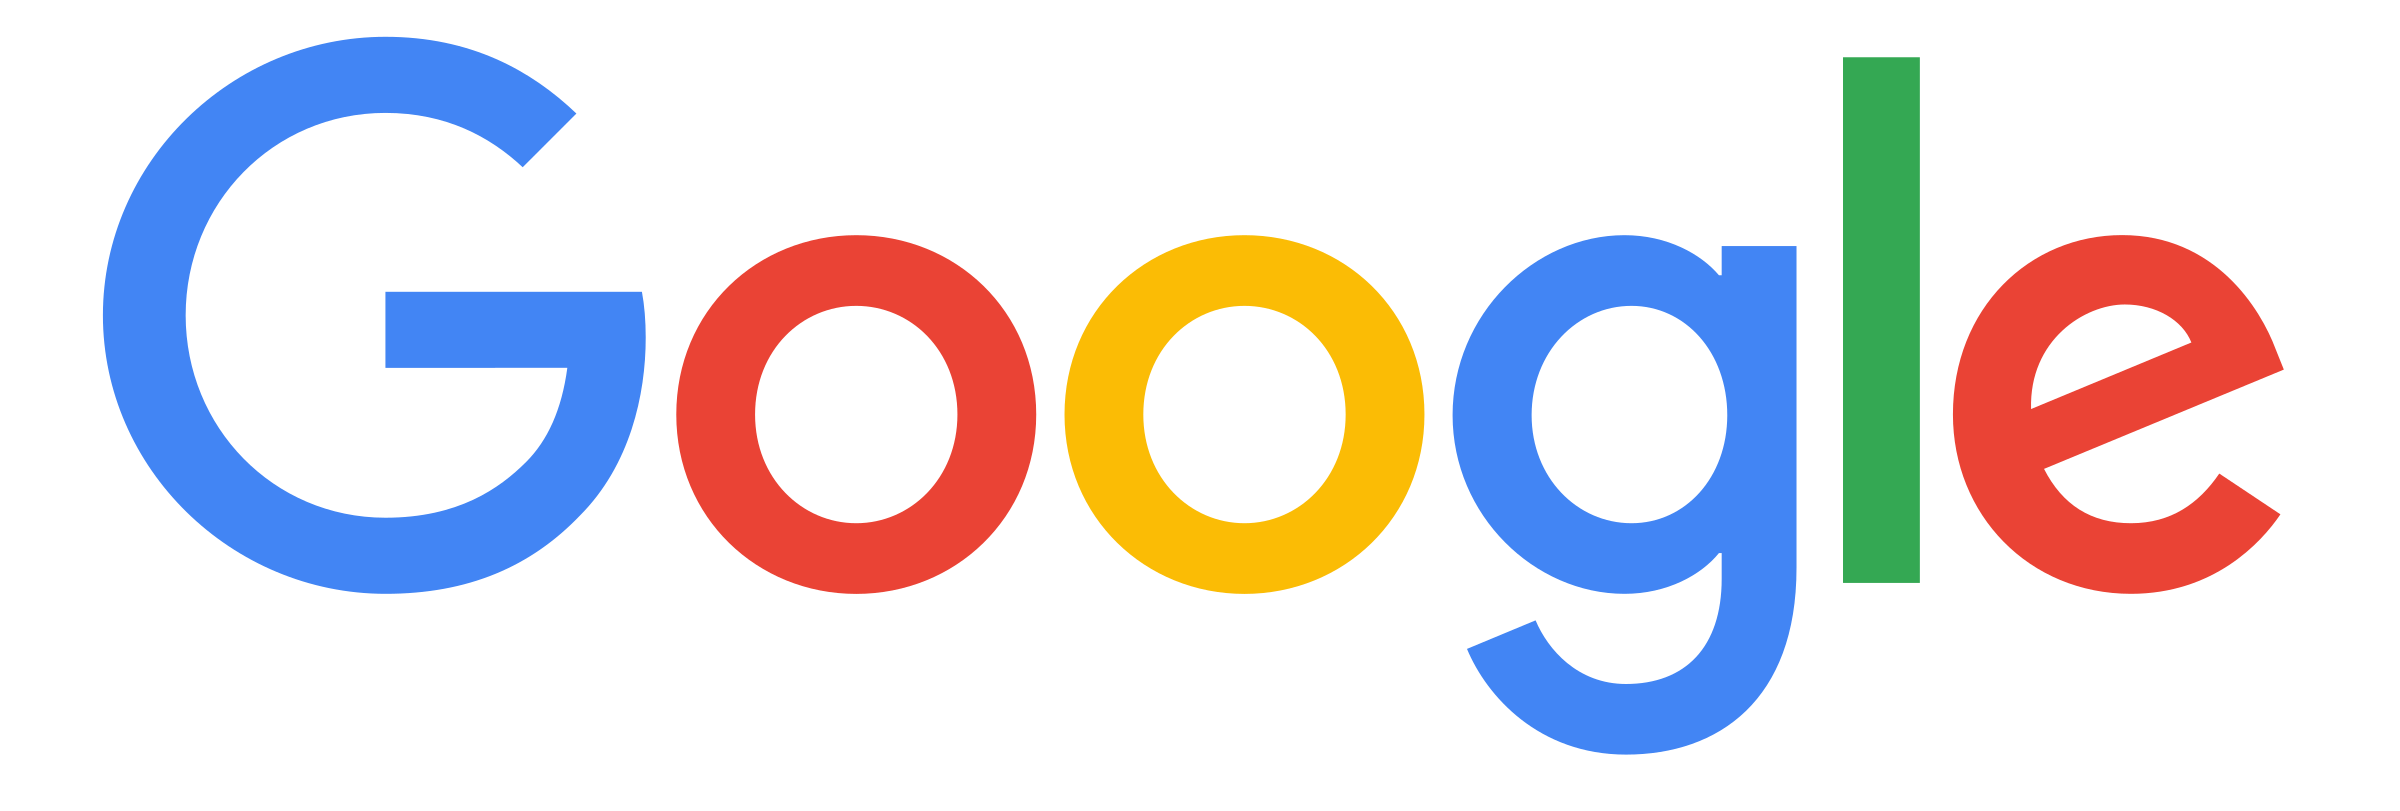 Google Logo PNG Transparent & SVG Vector - Freebie Supply - Google Logo.svg